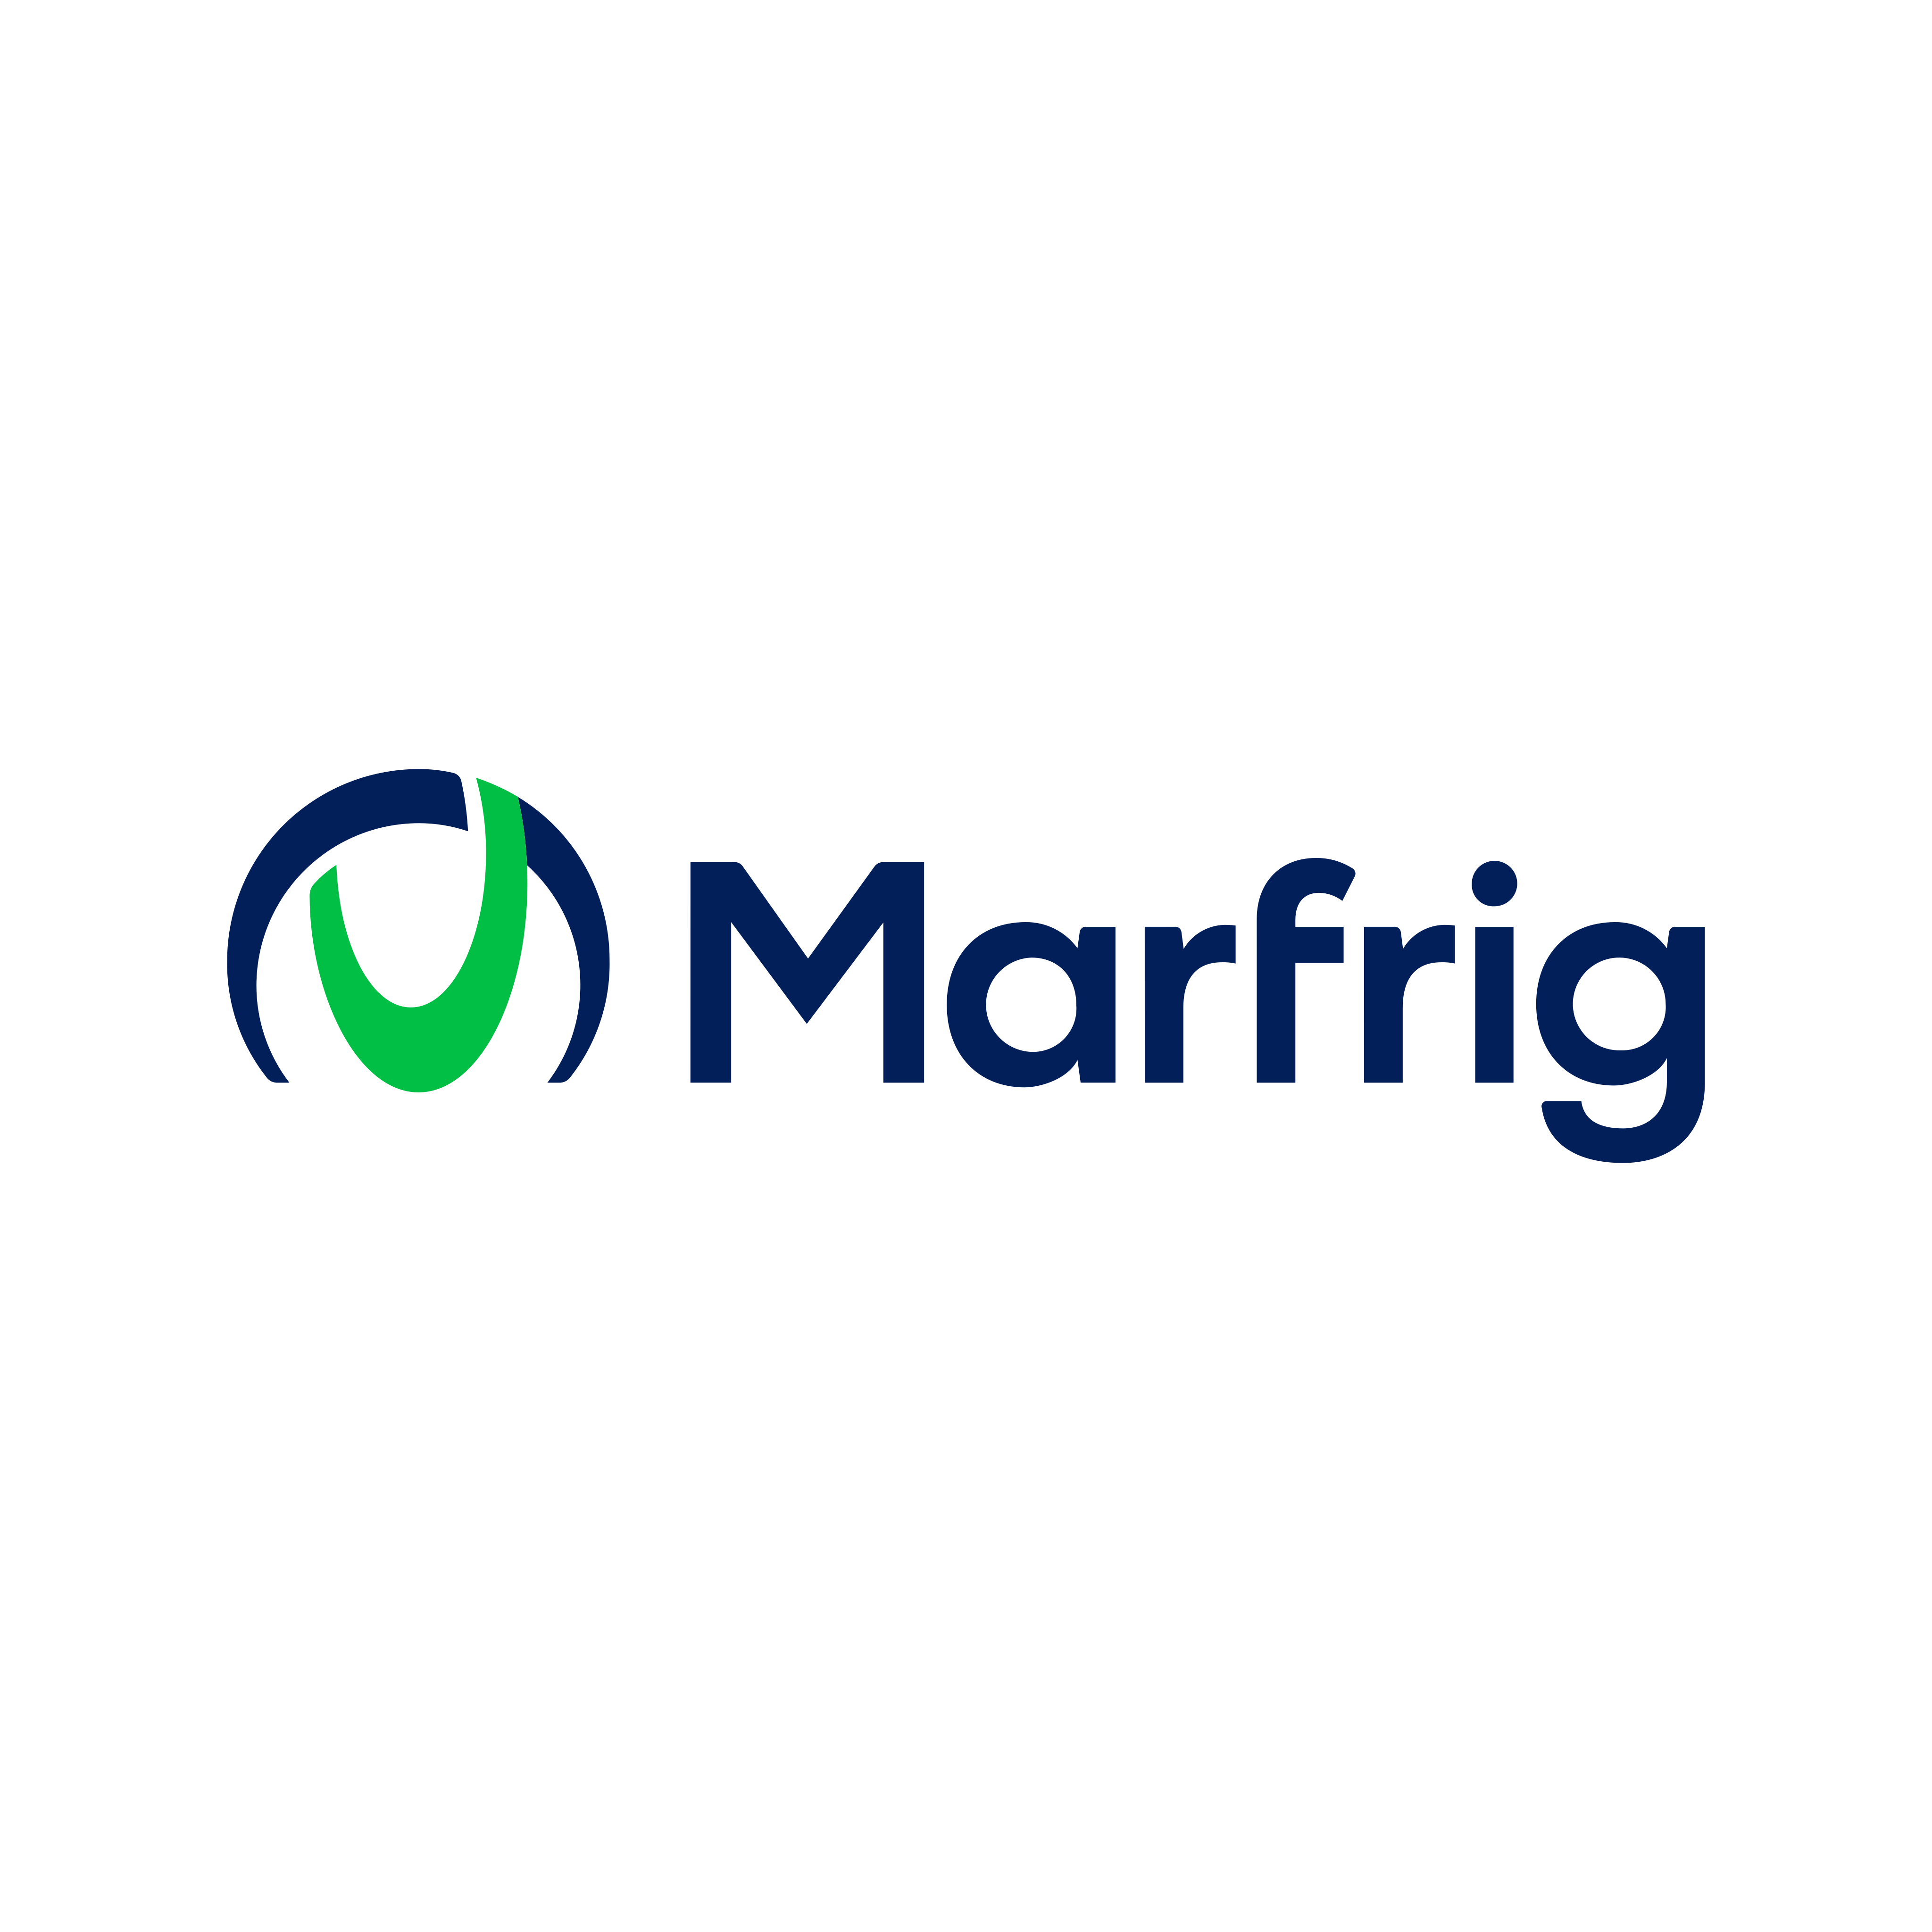 Marfrig_01